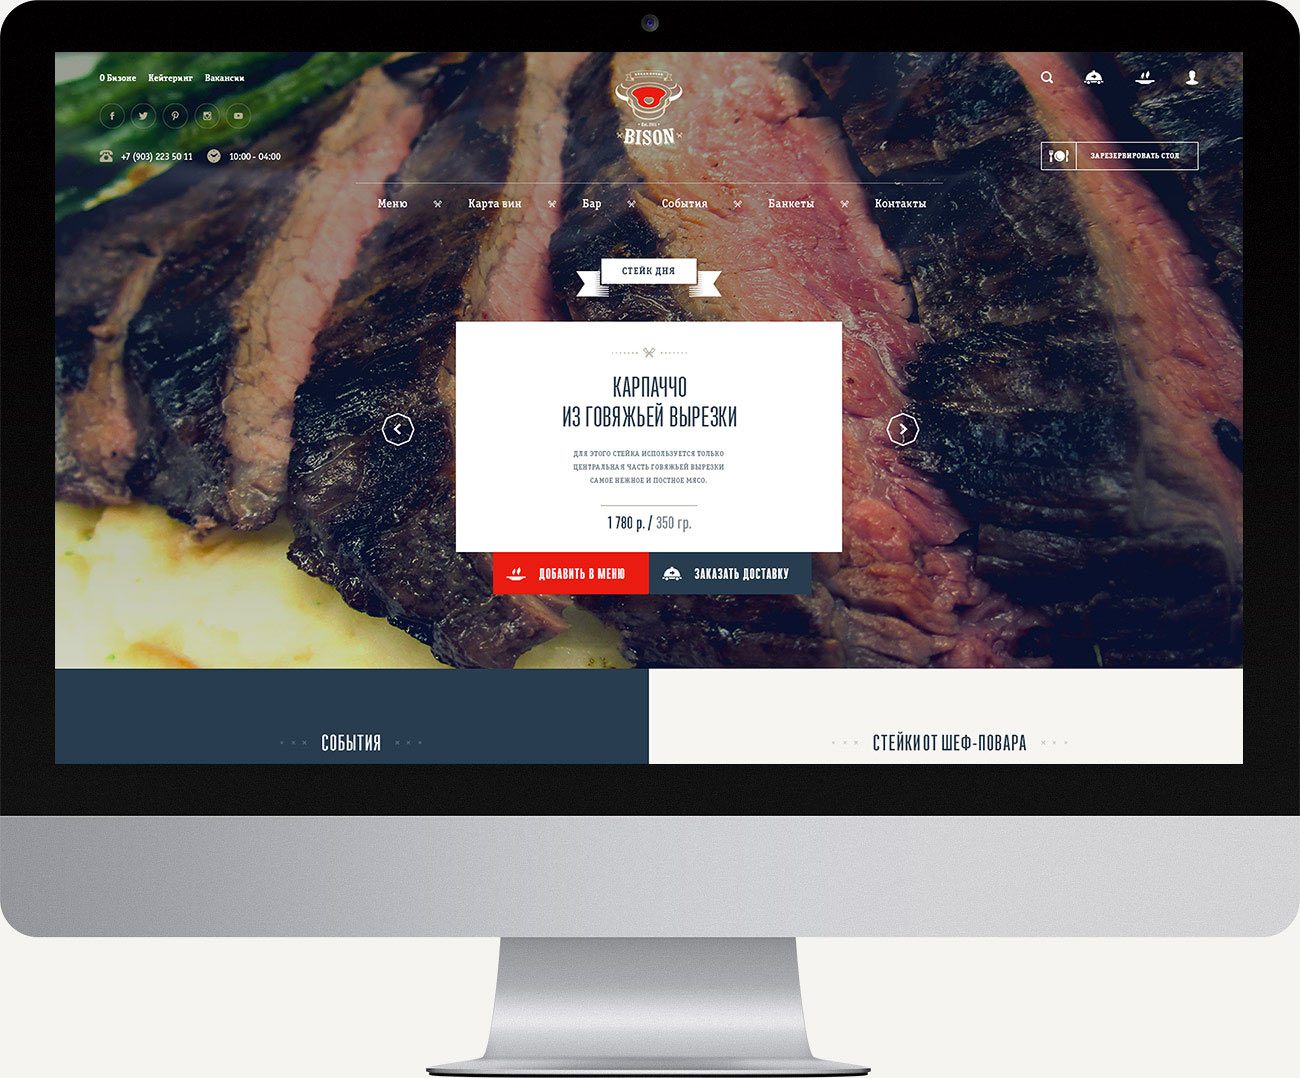 Дизайн сайта мясного ресторана Bison Steakhouse.